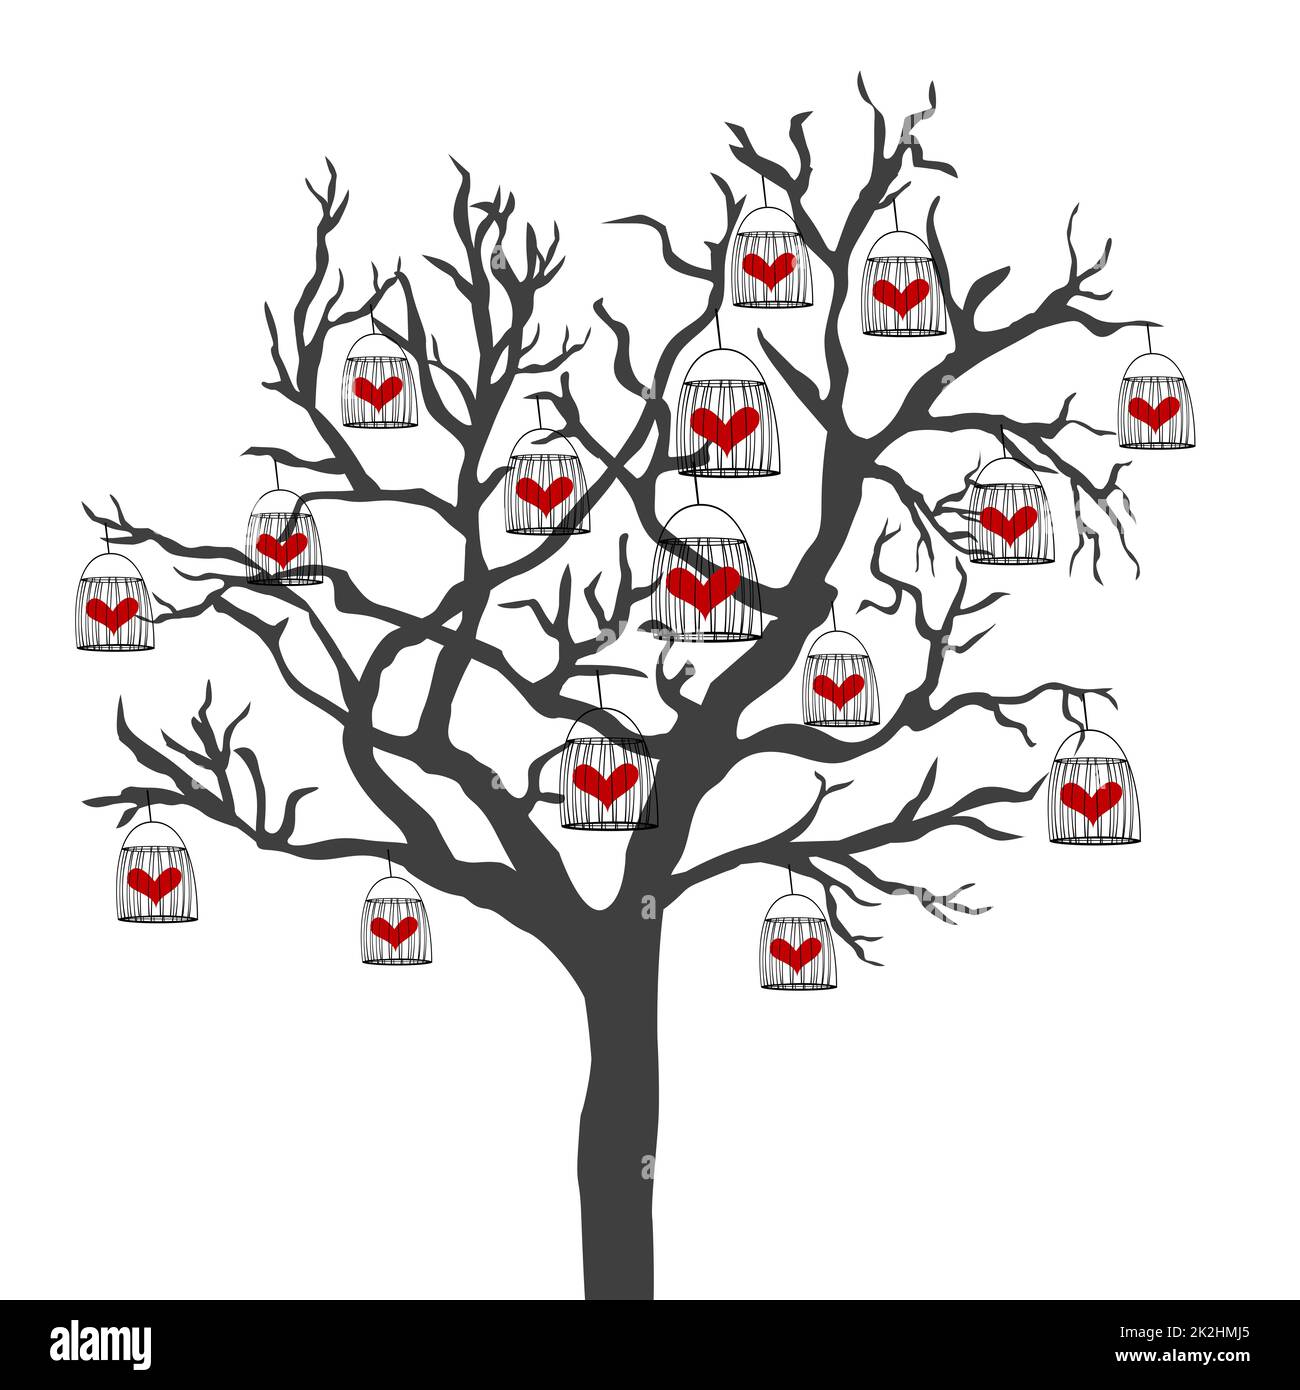 Illustrazione astratta di un albero con gabbie di uccelli che hanno il cuore chiuso in loro Foto Stock